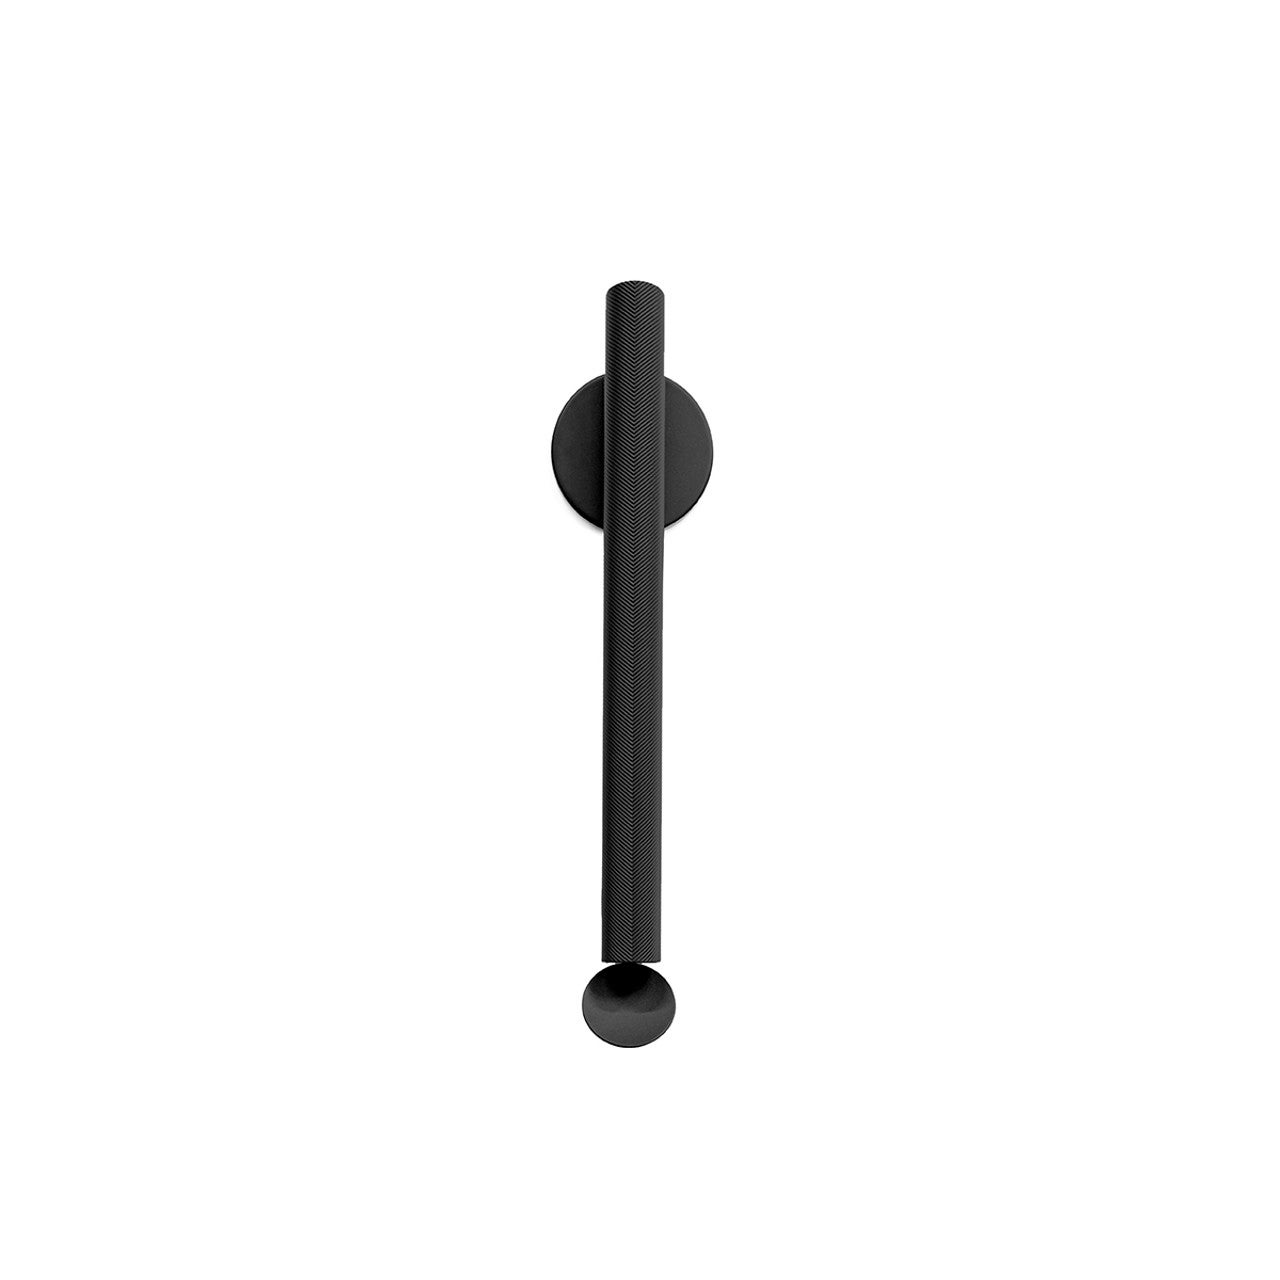 Flos Flauta Spiga 3000K Medium Indoor/Outdoor Wall Sconce in Black For Sale